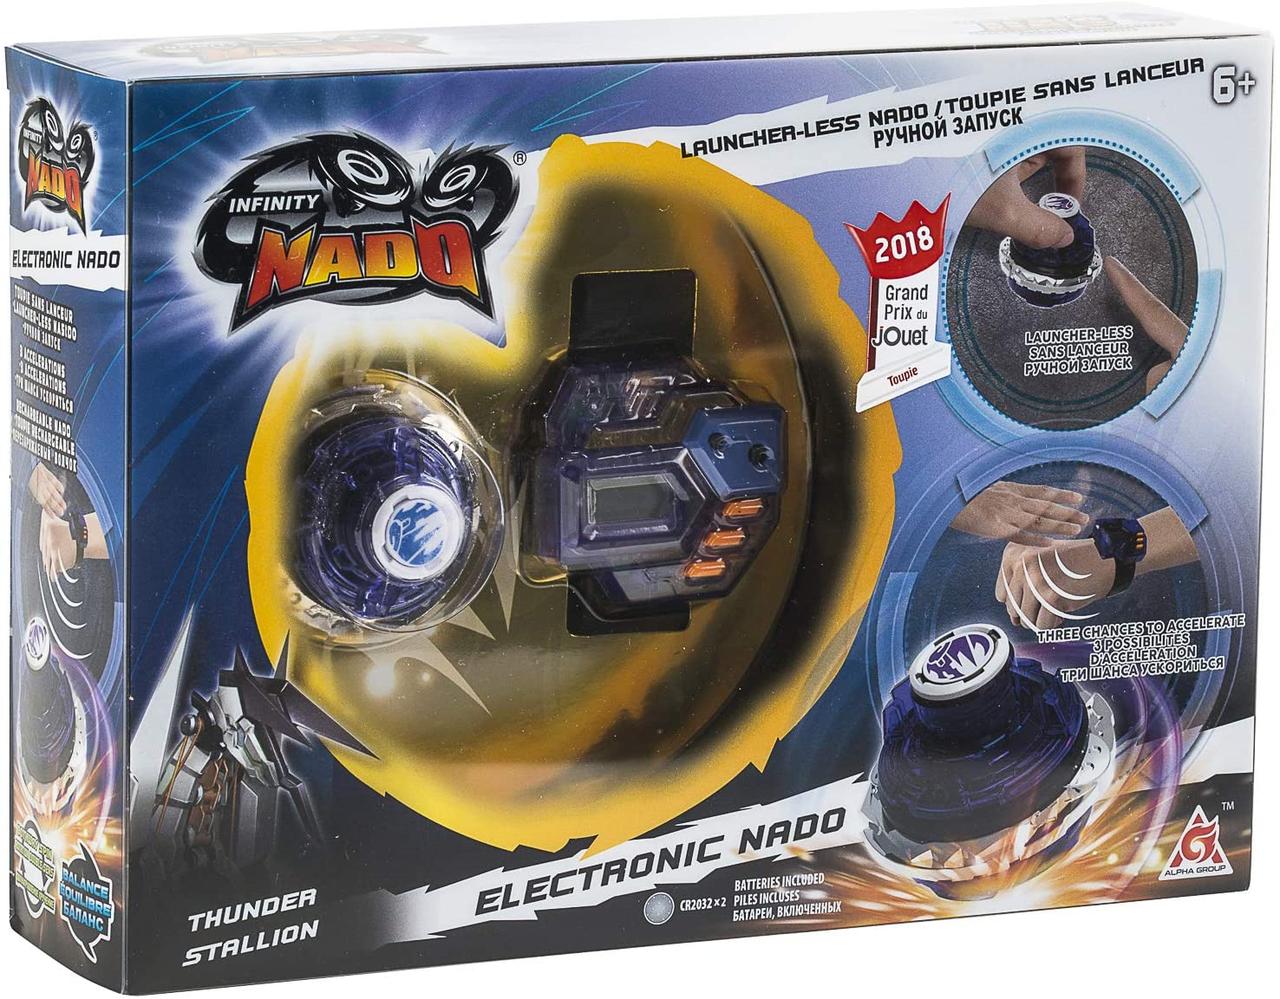 Волчок електронный с часами-контроллерами Thunder Stallion Infinity Nado Оригинал из США